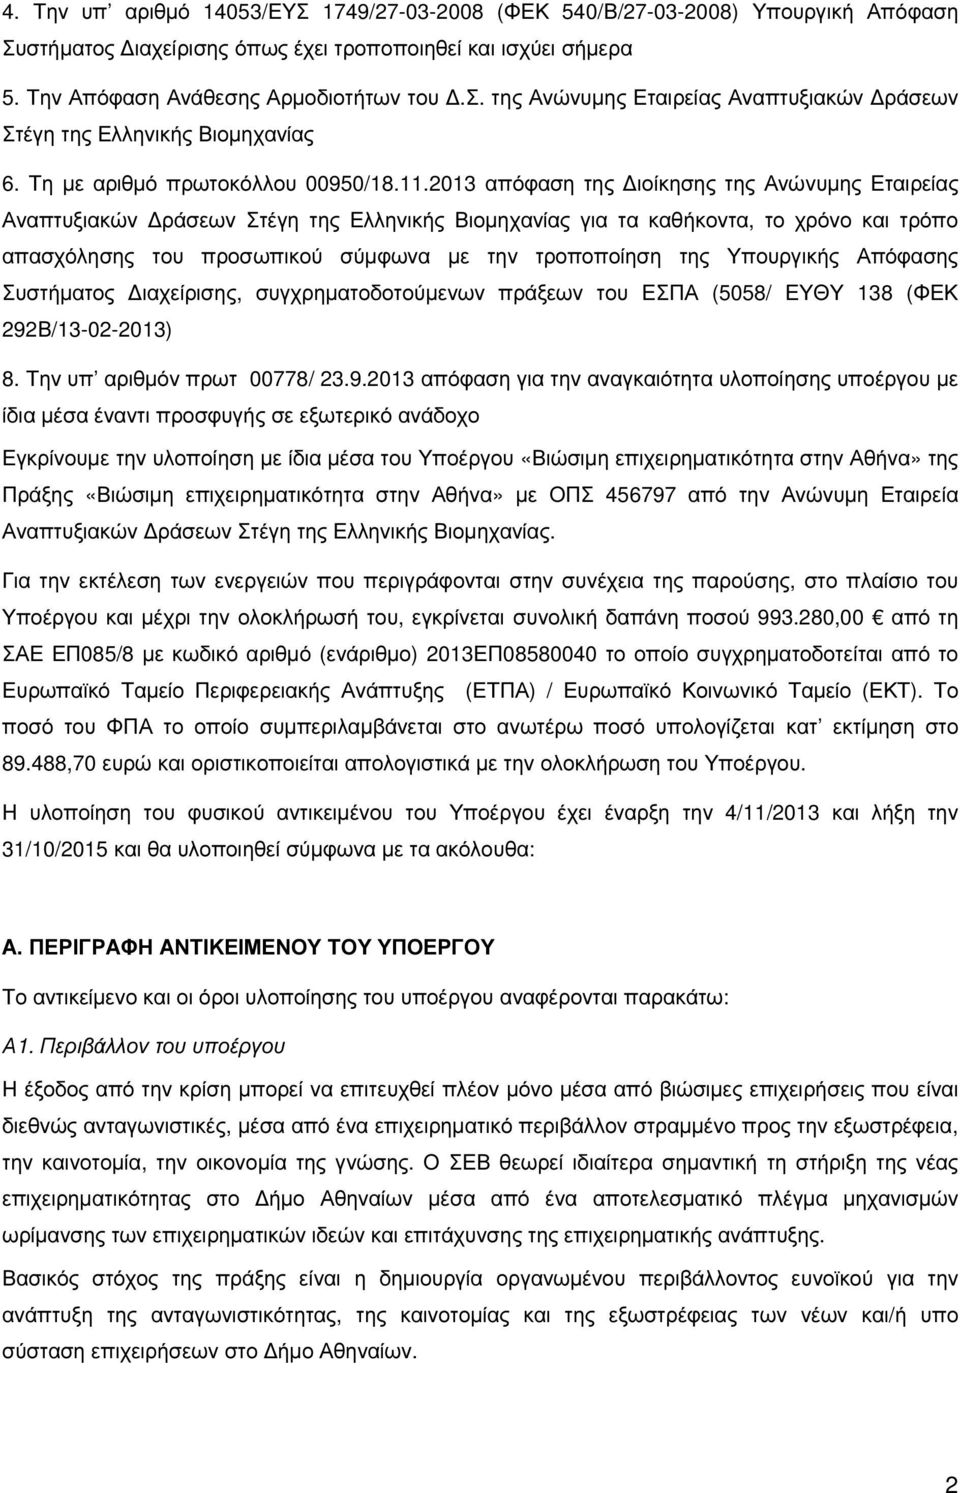 2013 απόφαση της ιοίκησης της Ανώνυµης Εταιρείας Αναπτυξιακών ράσεων Στέγη της Ελληνικής Βιοµηχανίας για τα καθήκοντα, το χρόνο και τρόπο απασχόλησης του προσωπικού σύµφωνα µε την τροποποίηση της